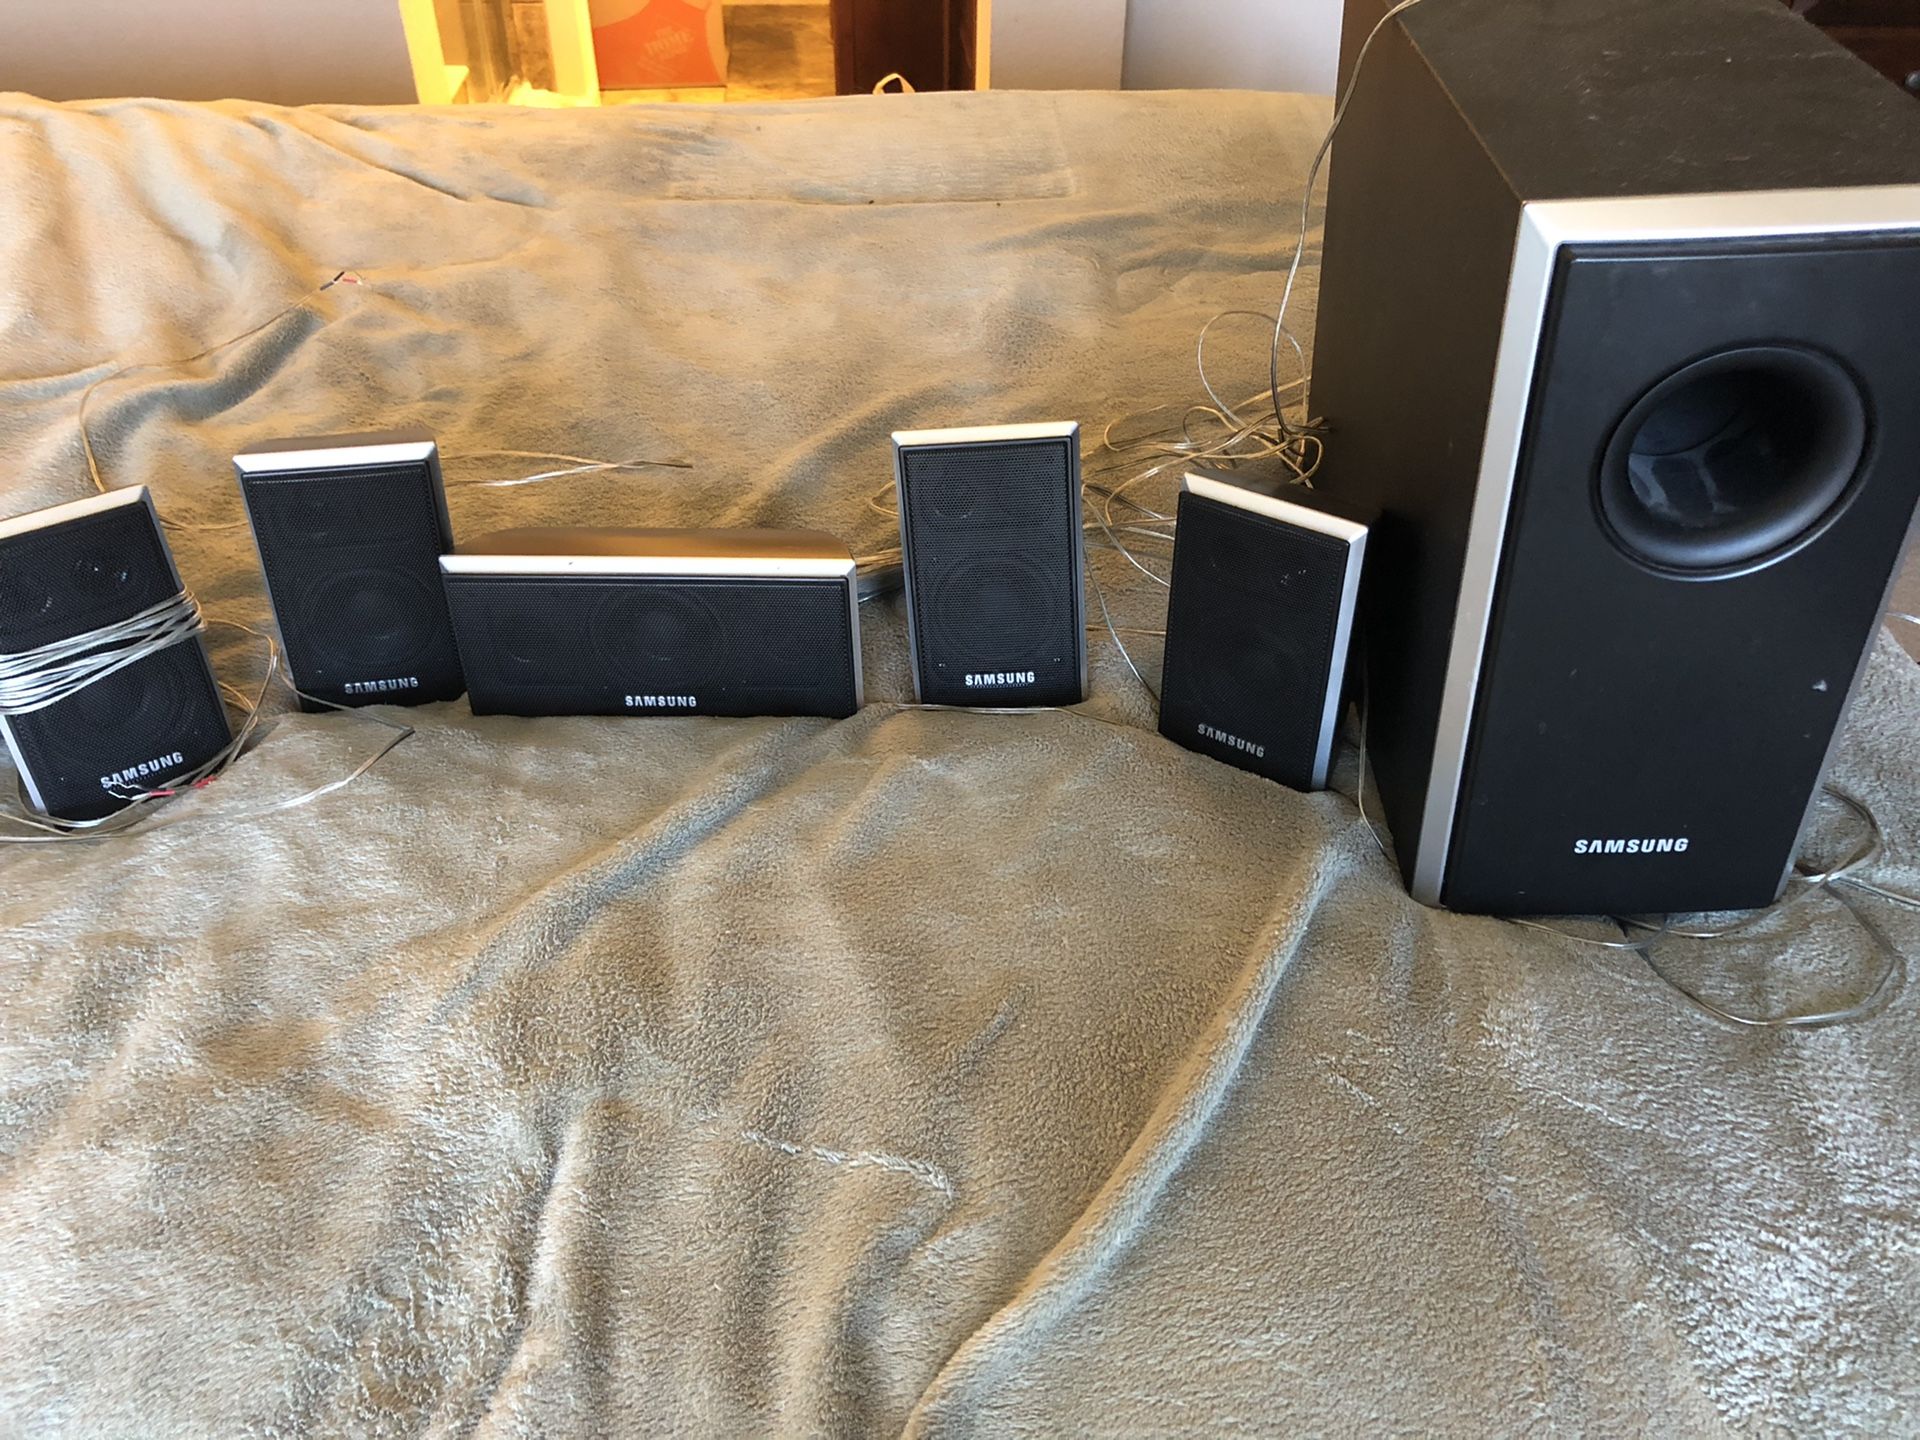 Samsung surround sound speakers